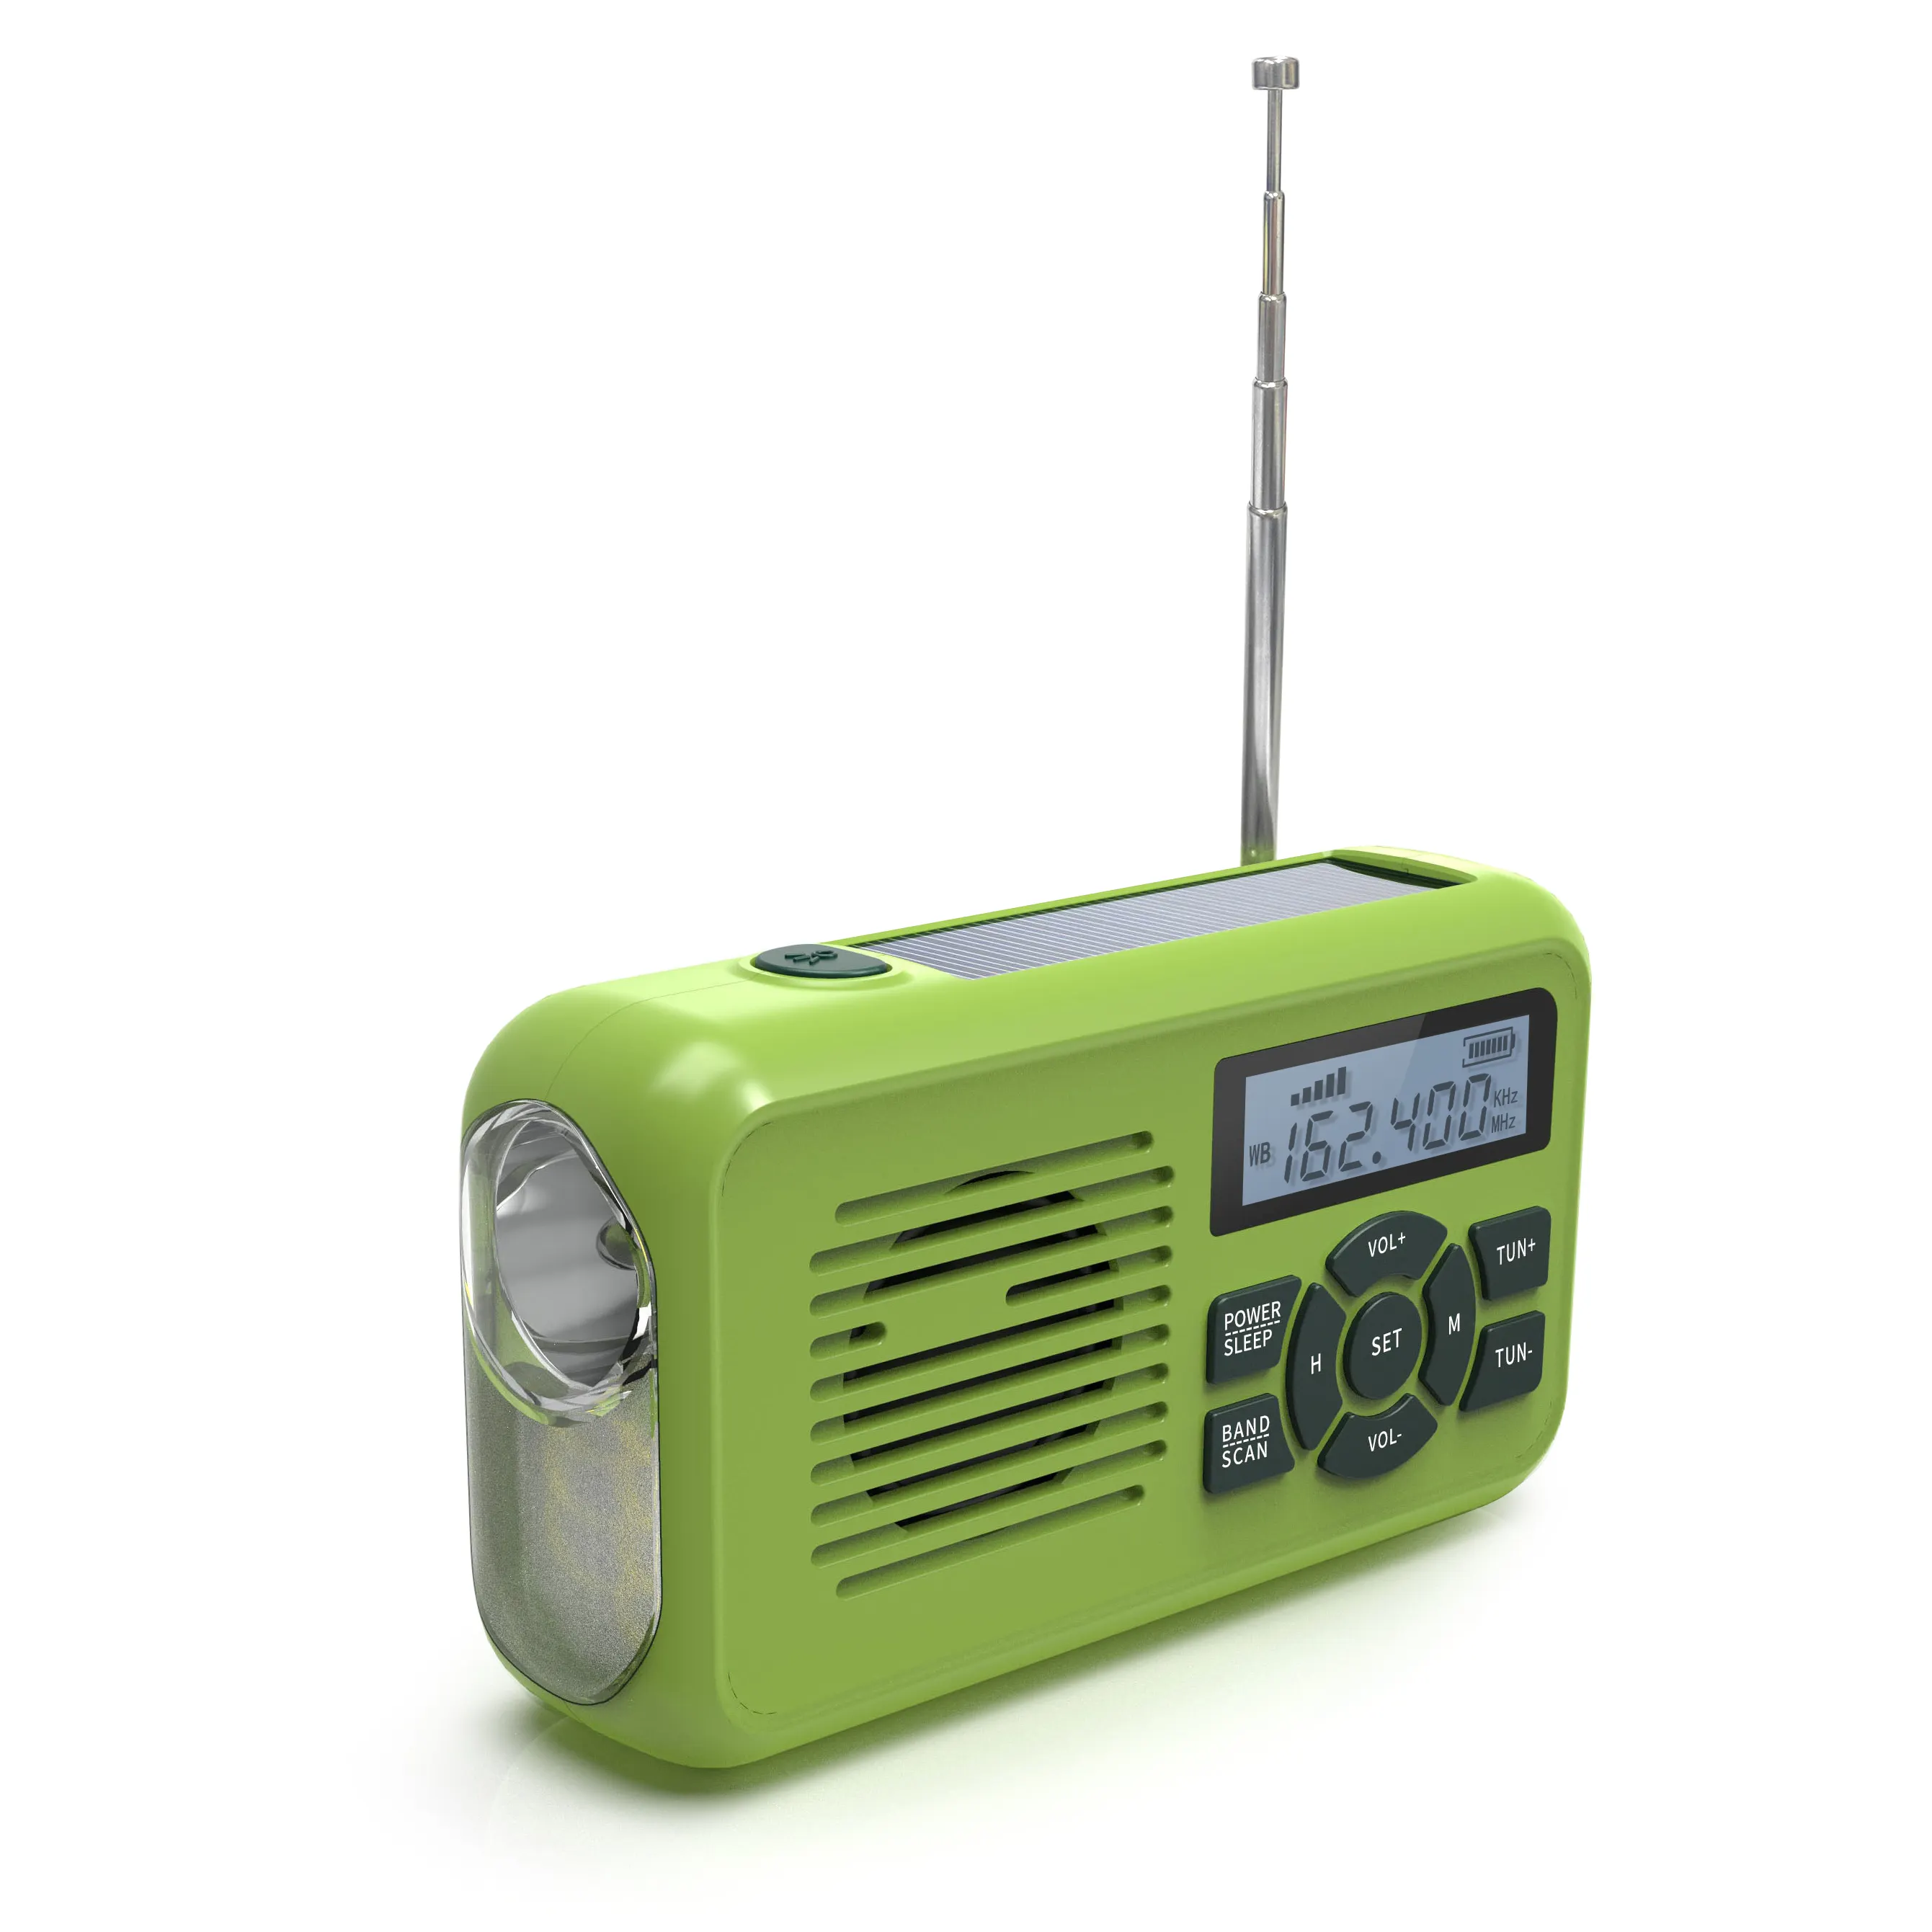 Tốt nhất xách tay khẩn cấp 2000mAh tay Crank đài phát thanh có thể sạc lại AM FM noaa thời tiết đài phát thanh